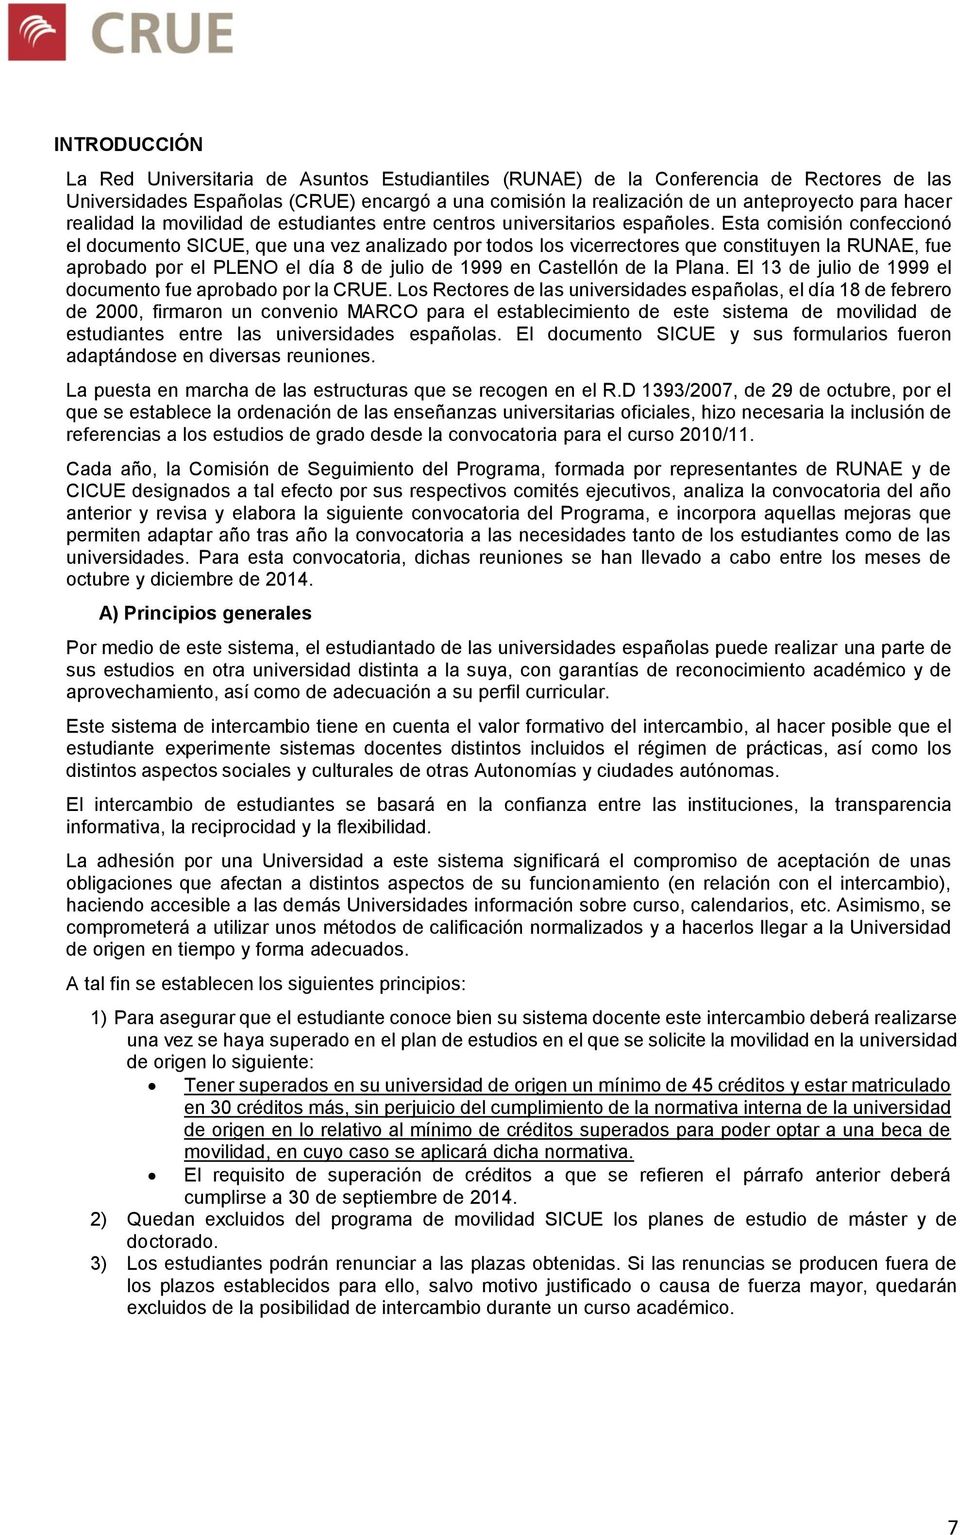 Esta comisión confeccionó el documento SICUE, que una vez analizado por todos los vicerrectores que constituyen la RUNAE, fue aprobado por el PLENO el día 8 de julio de 1999 en Castellón de la Plana.